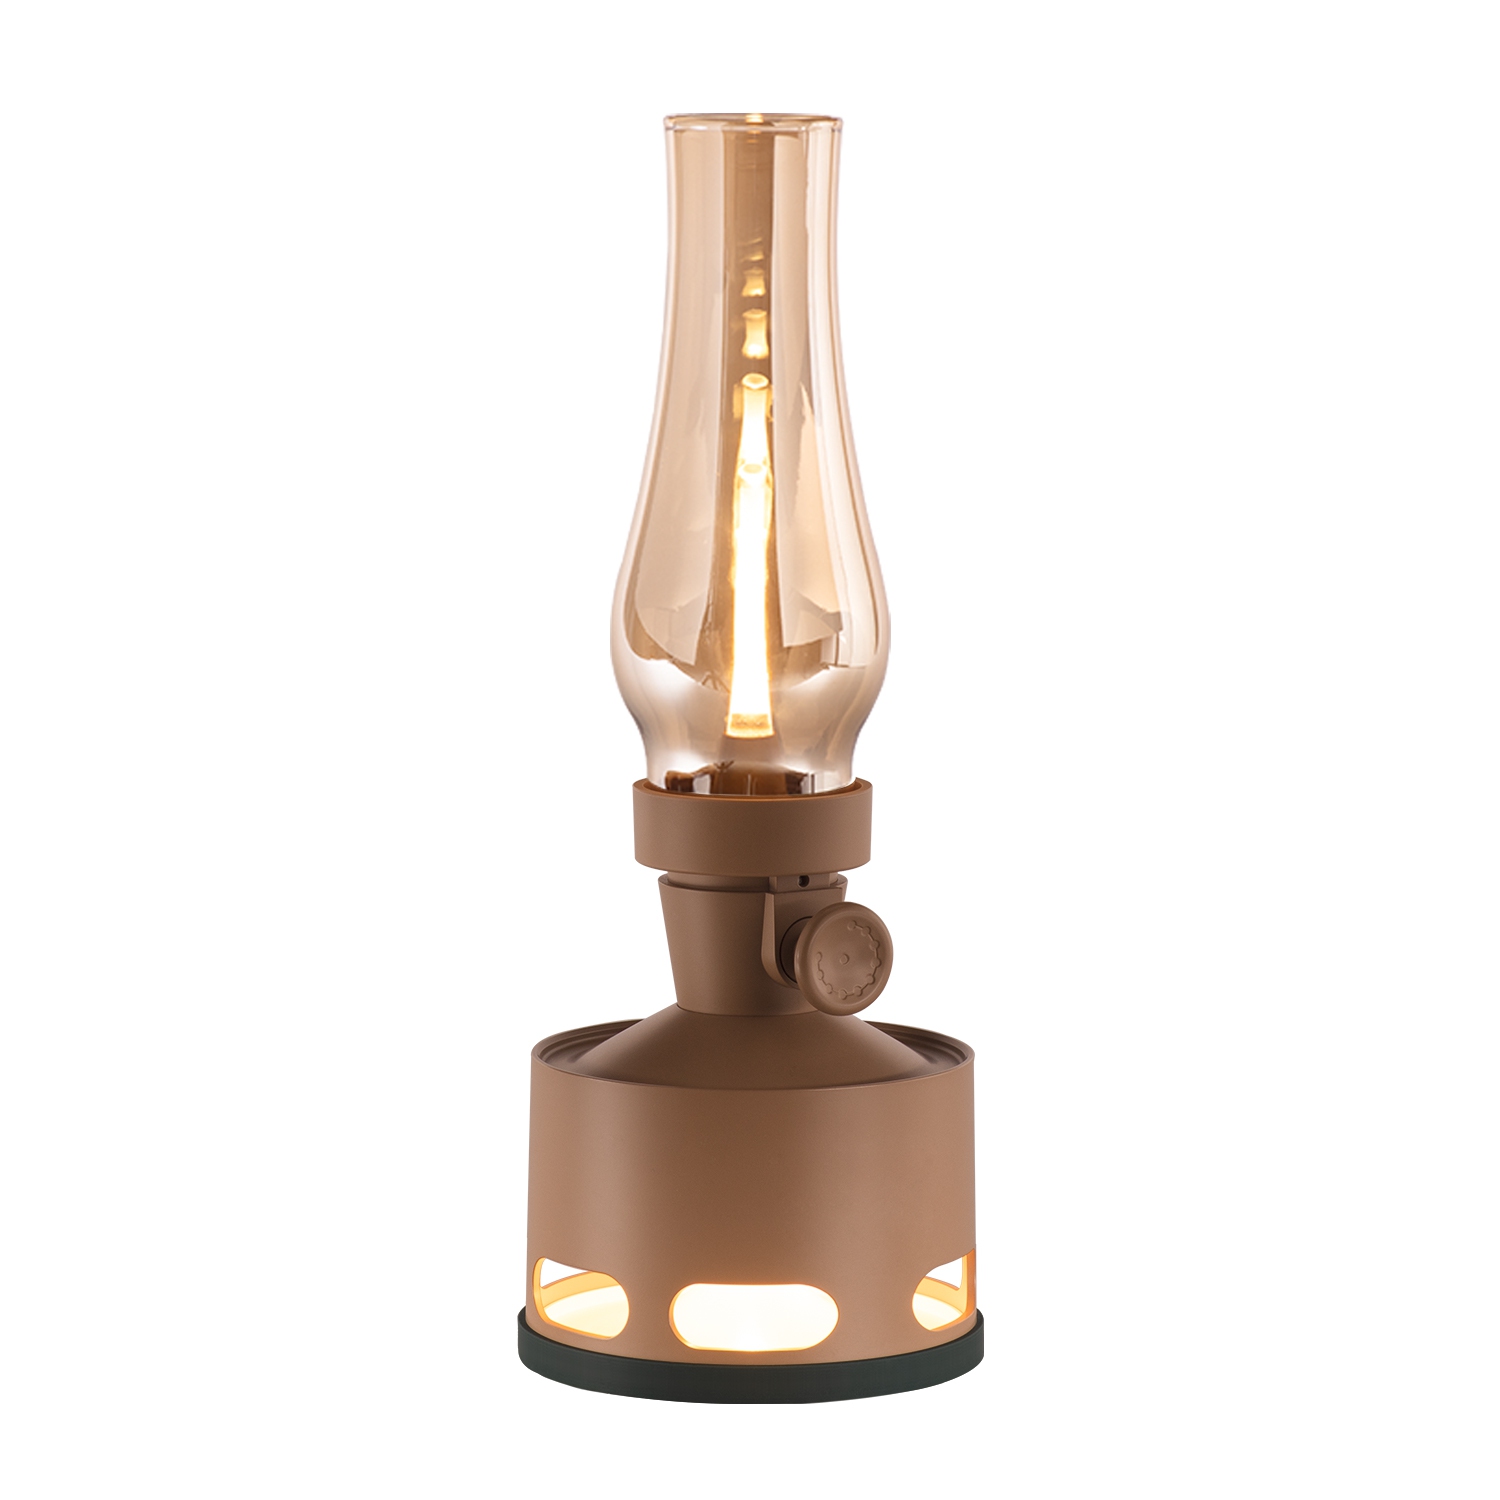 Tubicen Rechargeable LED Oil Lantern, 4000mAh Battery Operated Flameless LED Kerosene Lamp, Cordless Desk Lantern Kerosene Light, Blow/Tilt Off Control, 10-Way Dimmable Table Lamp, Brown